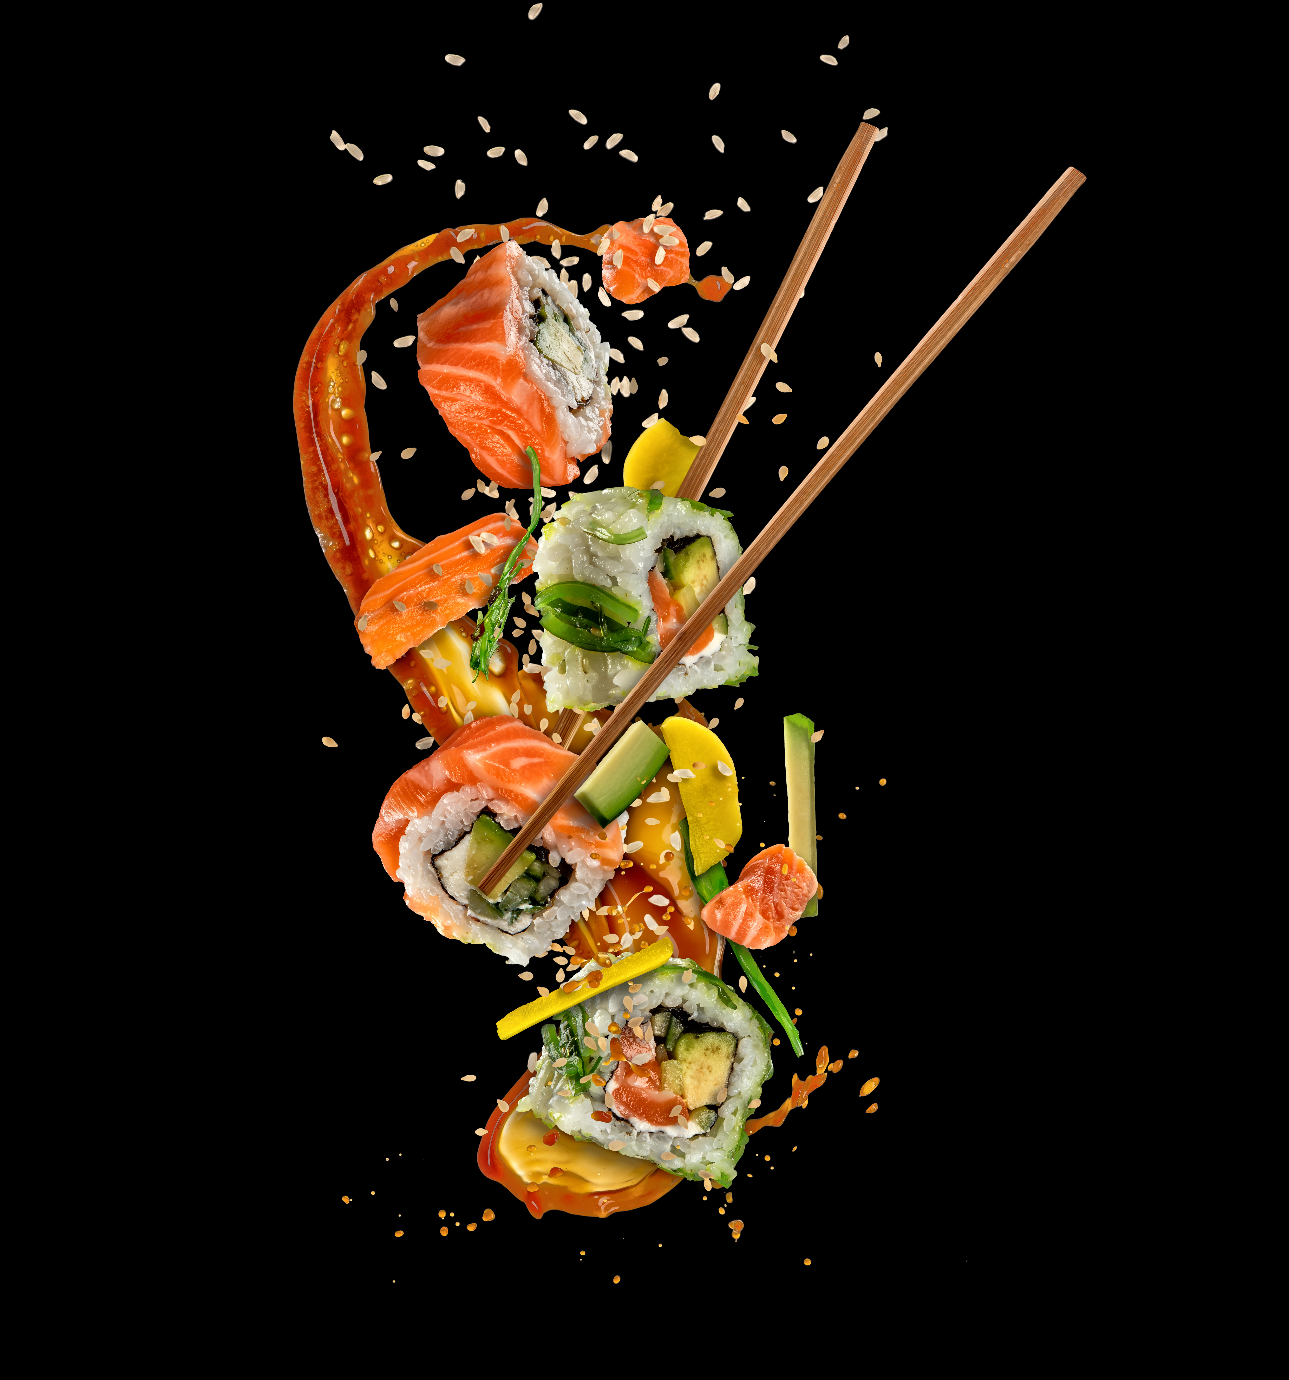 Découvrez nos sushis et spécialités asiatiques à Paris, chez Taketook, restaurant cacher Beth Din, situé à Paris en livraison, sur place ou à emporter.